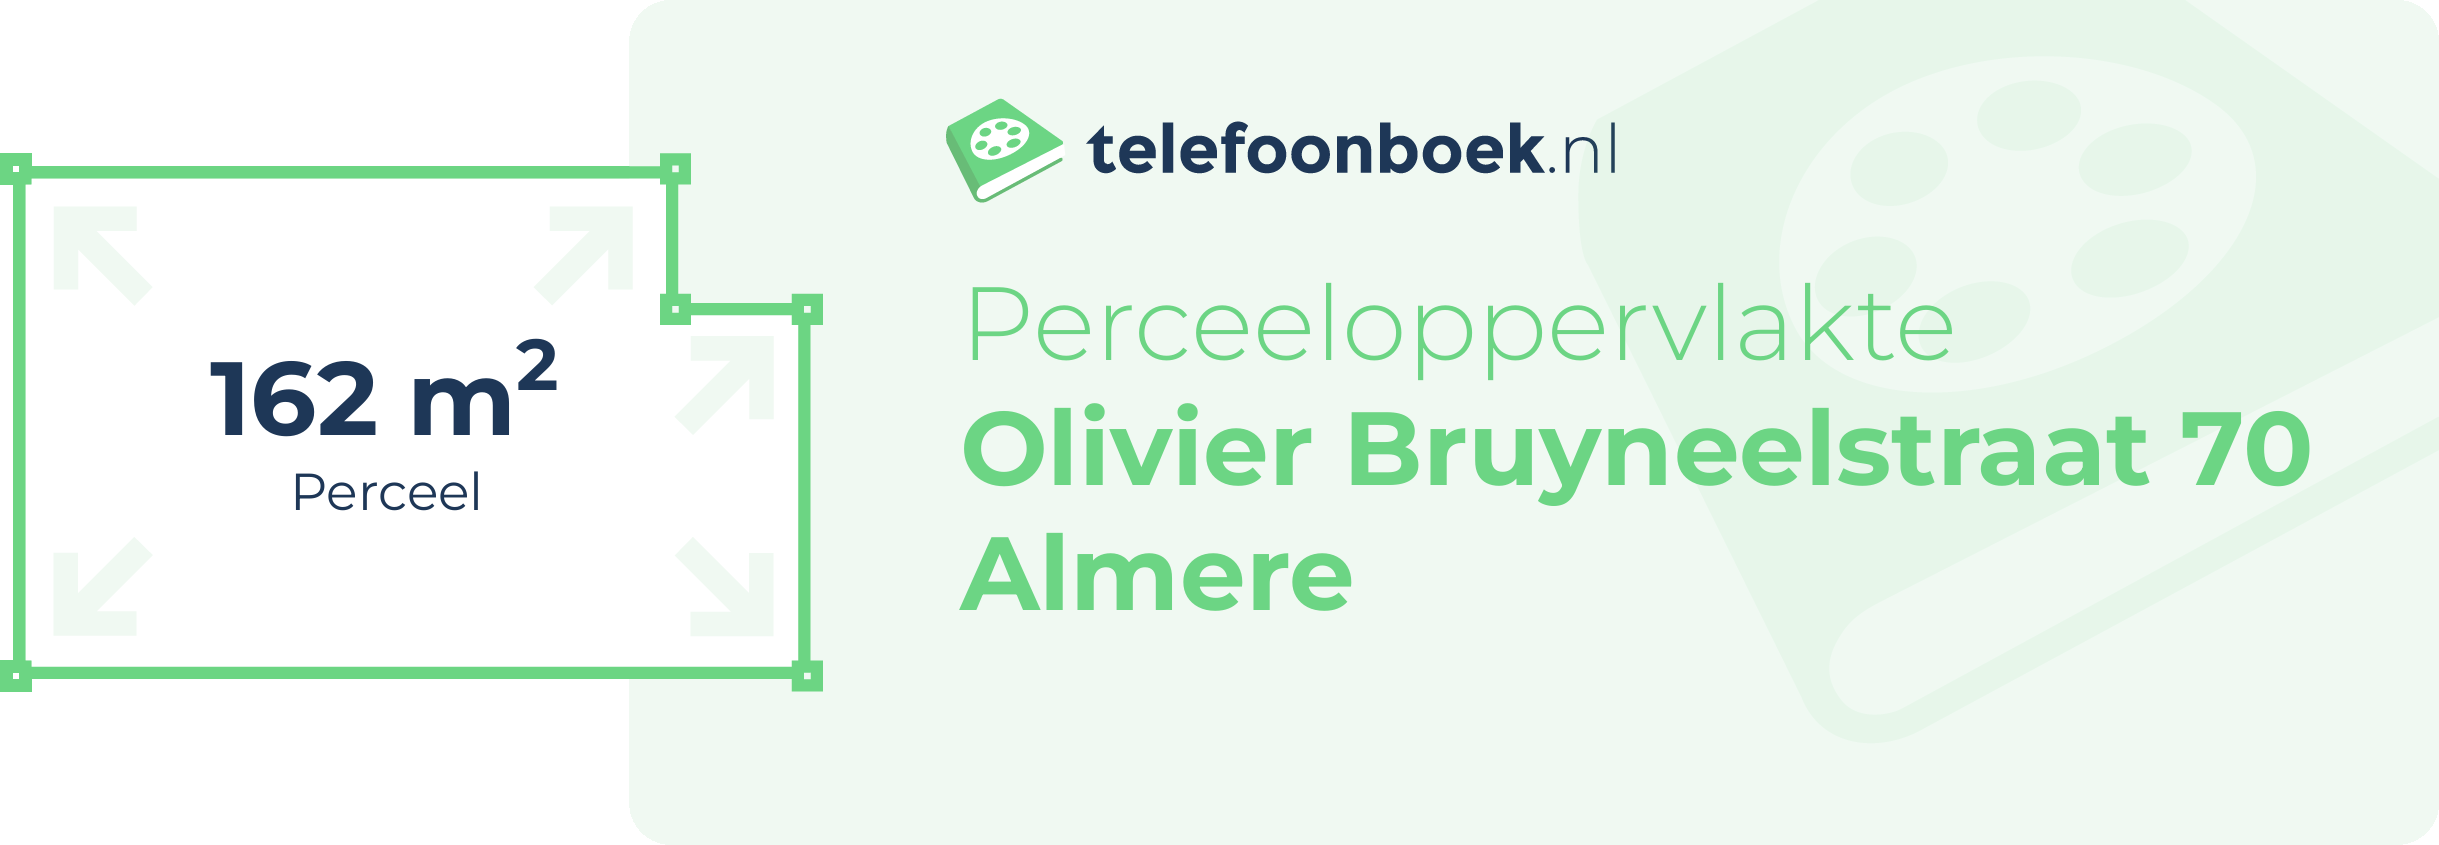 Perceeloppervlakte Olivier Bruyneelstraat 70 Almere